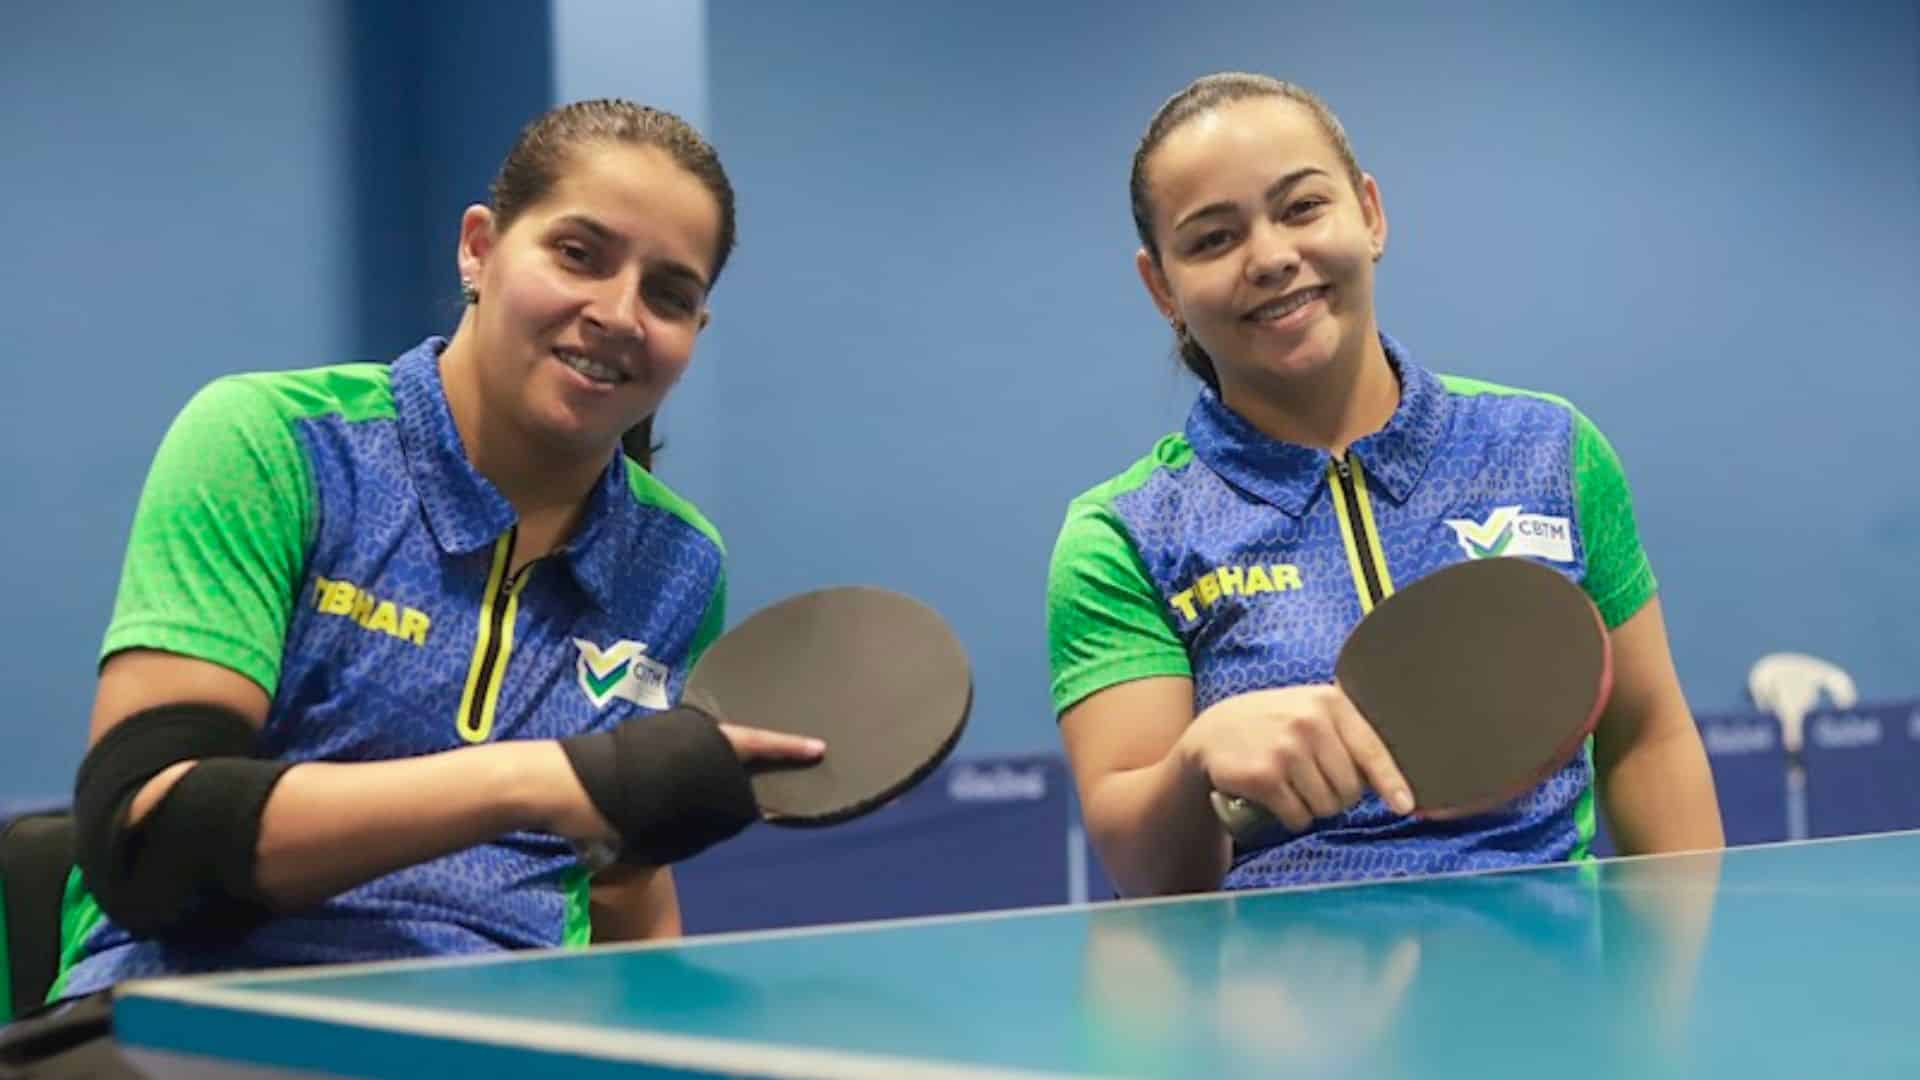 Catia Oliveira e Marliane Santos comemoram ouro Aberto Paralímpico da Tailândia (Foto: André Soares/CBTM)